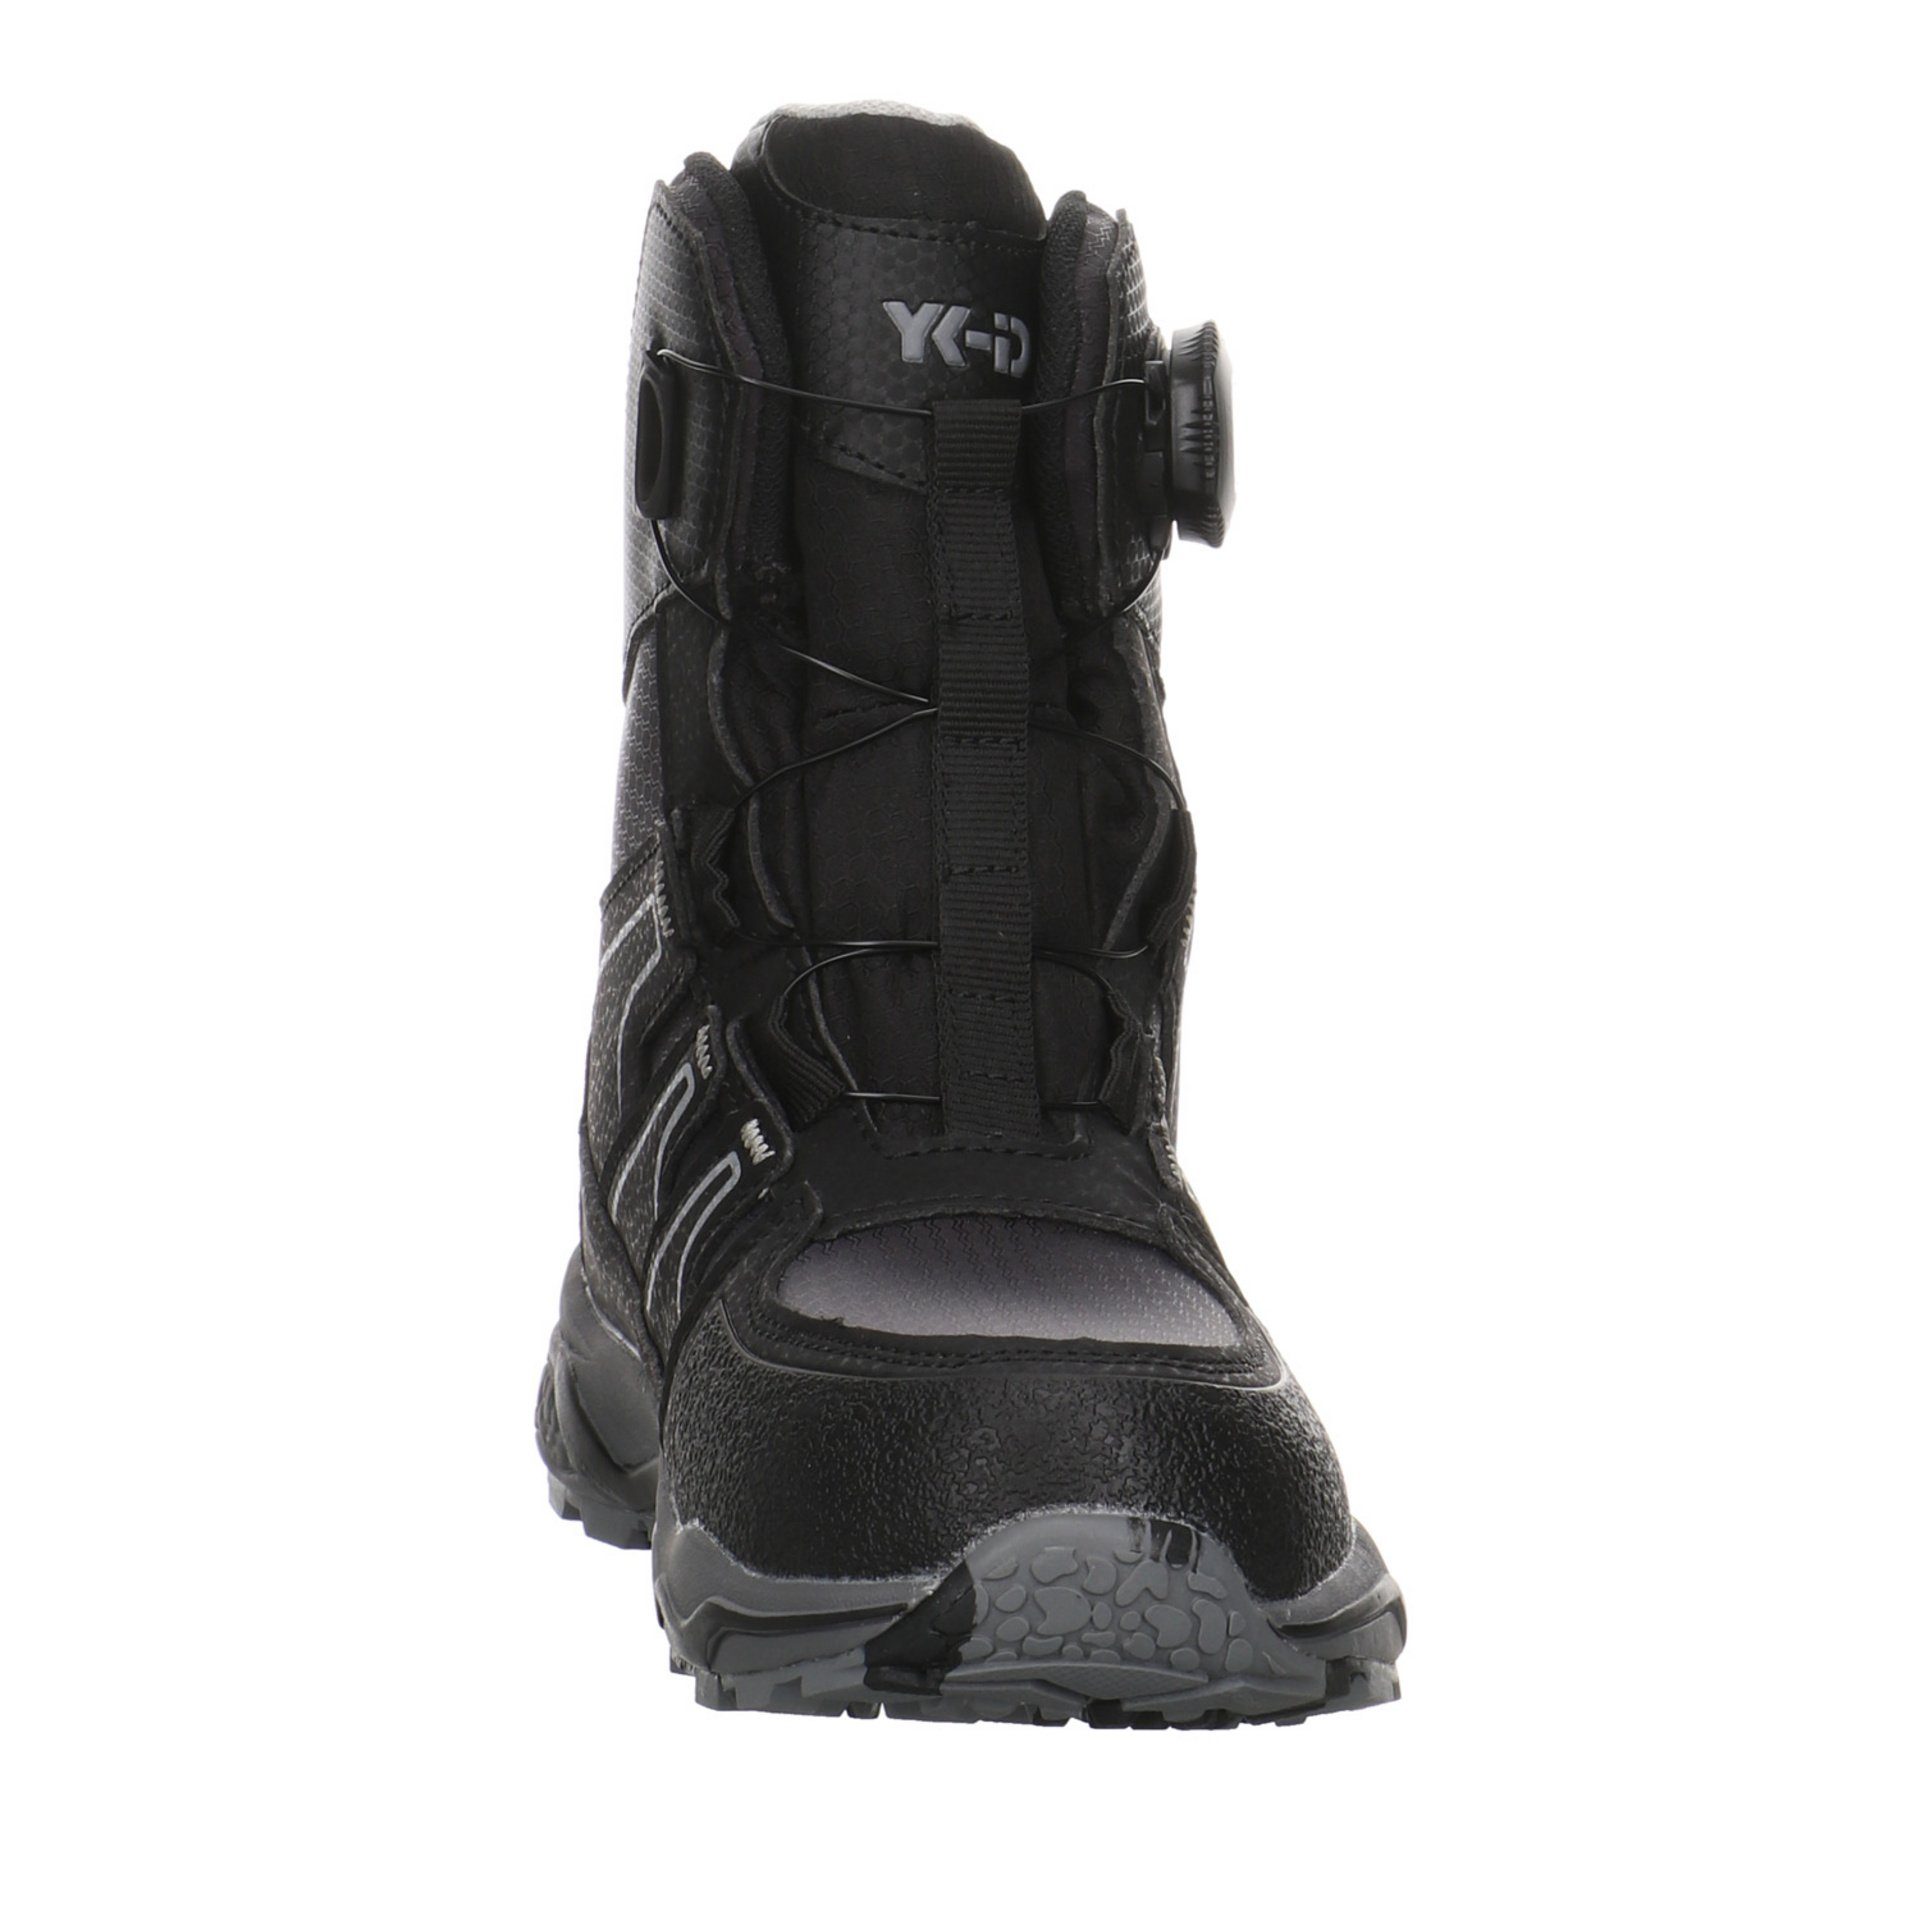 Stiefel YK-ID Larus-Sympatex Schuhe Salamander Synthetikkombination Boots Stiefel by Jungen Lurchi